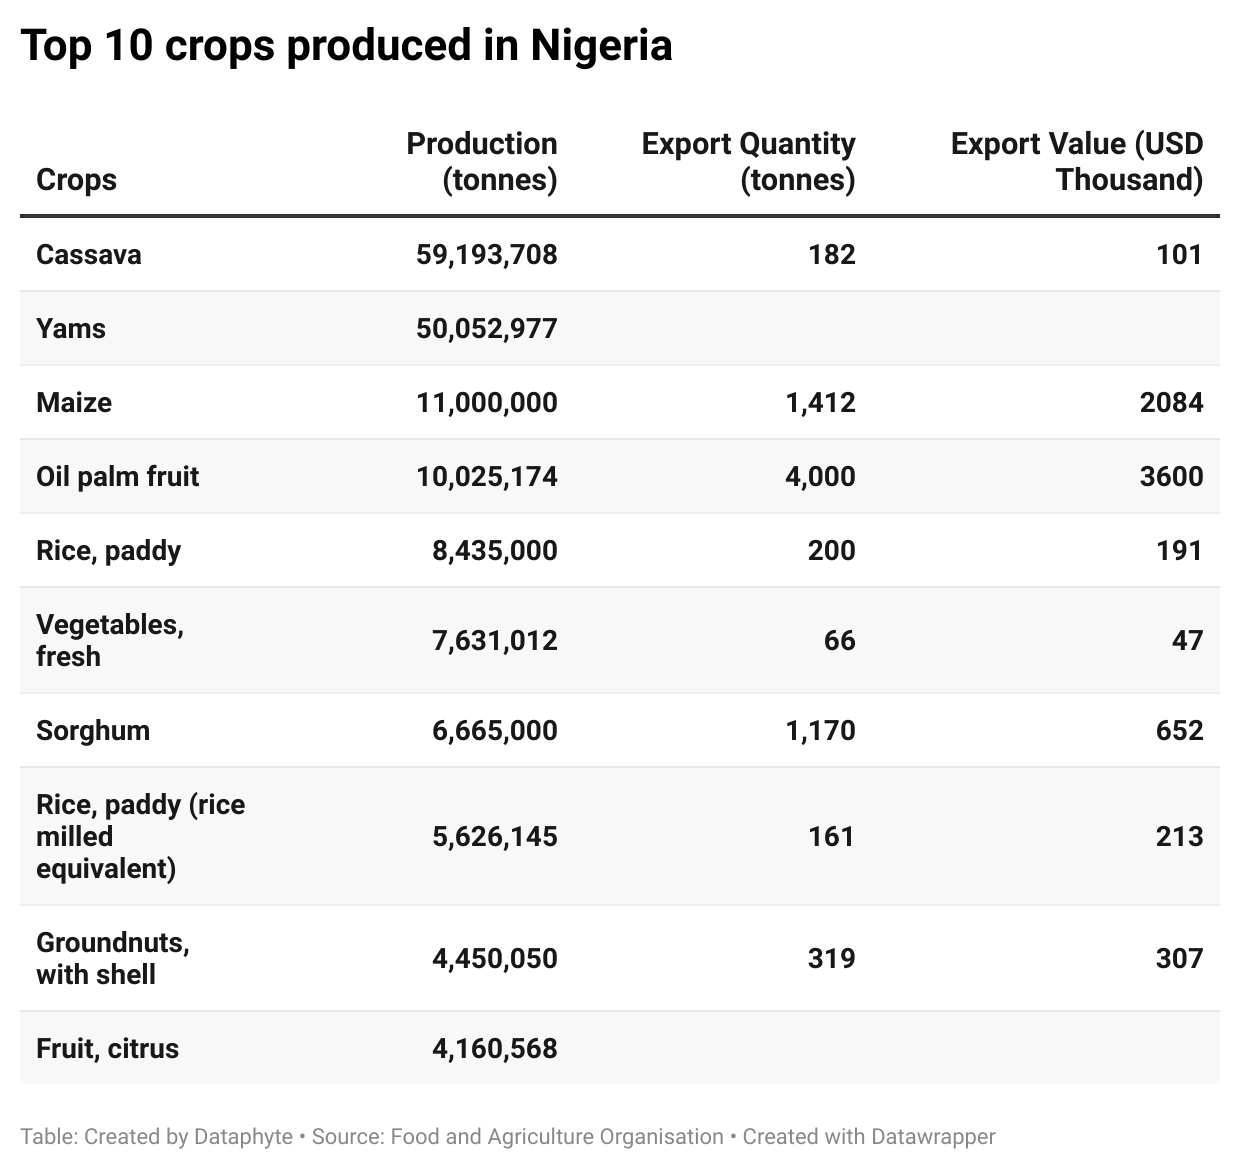 Top 10 crops produced in Nigeria